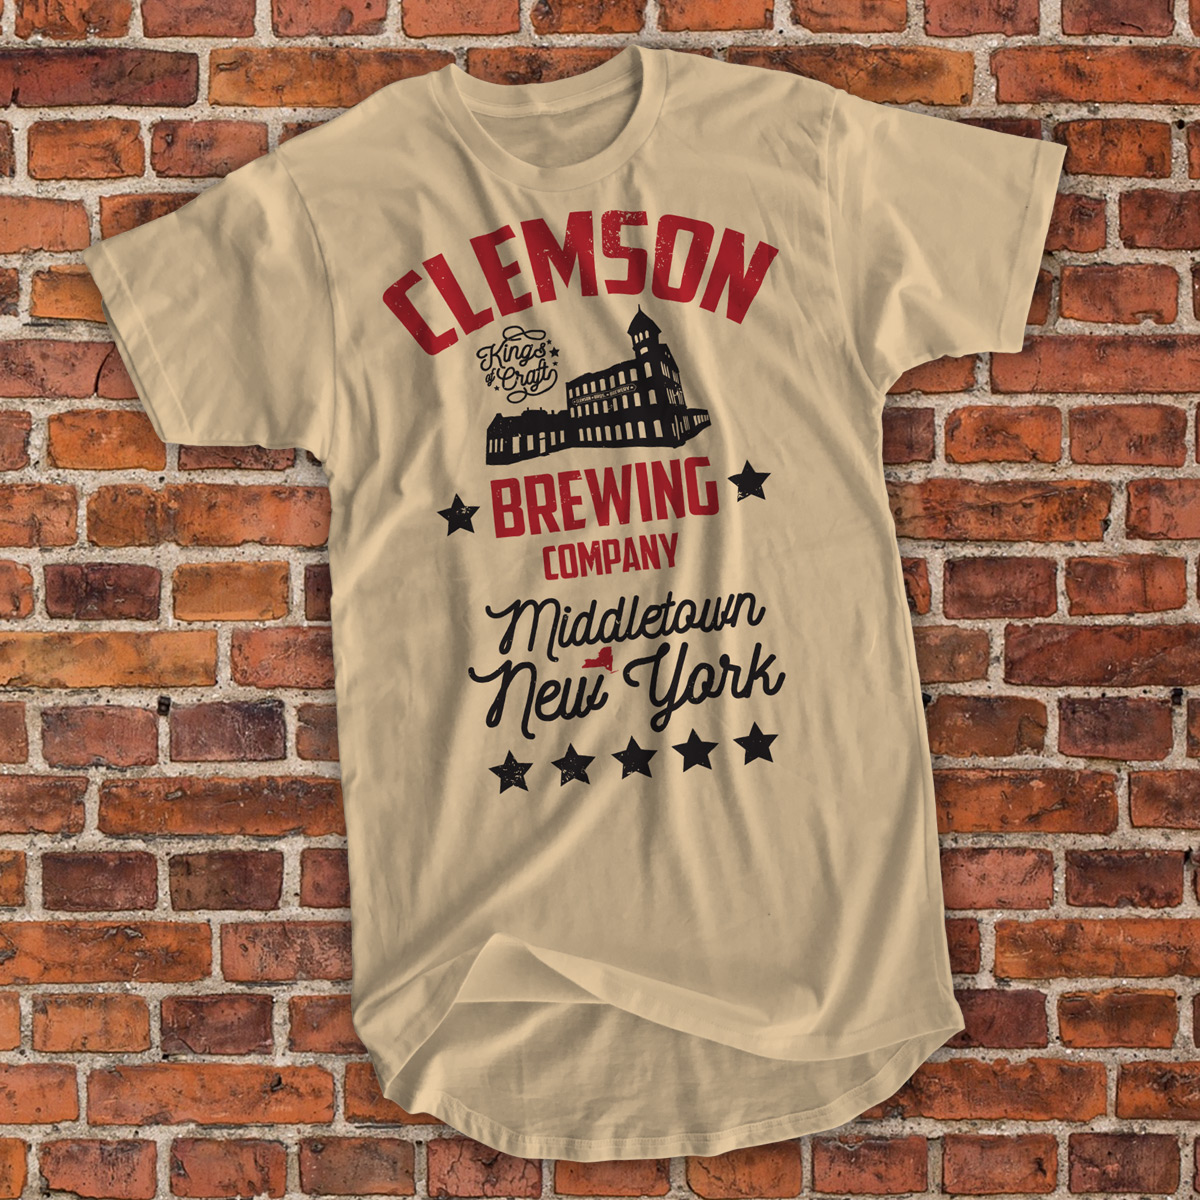 Clemson Bros. Brewery 'Kings of Craft' Tee